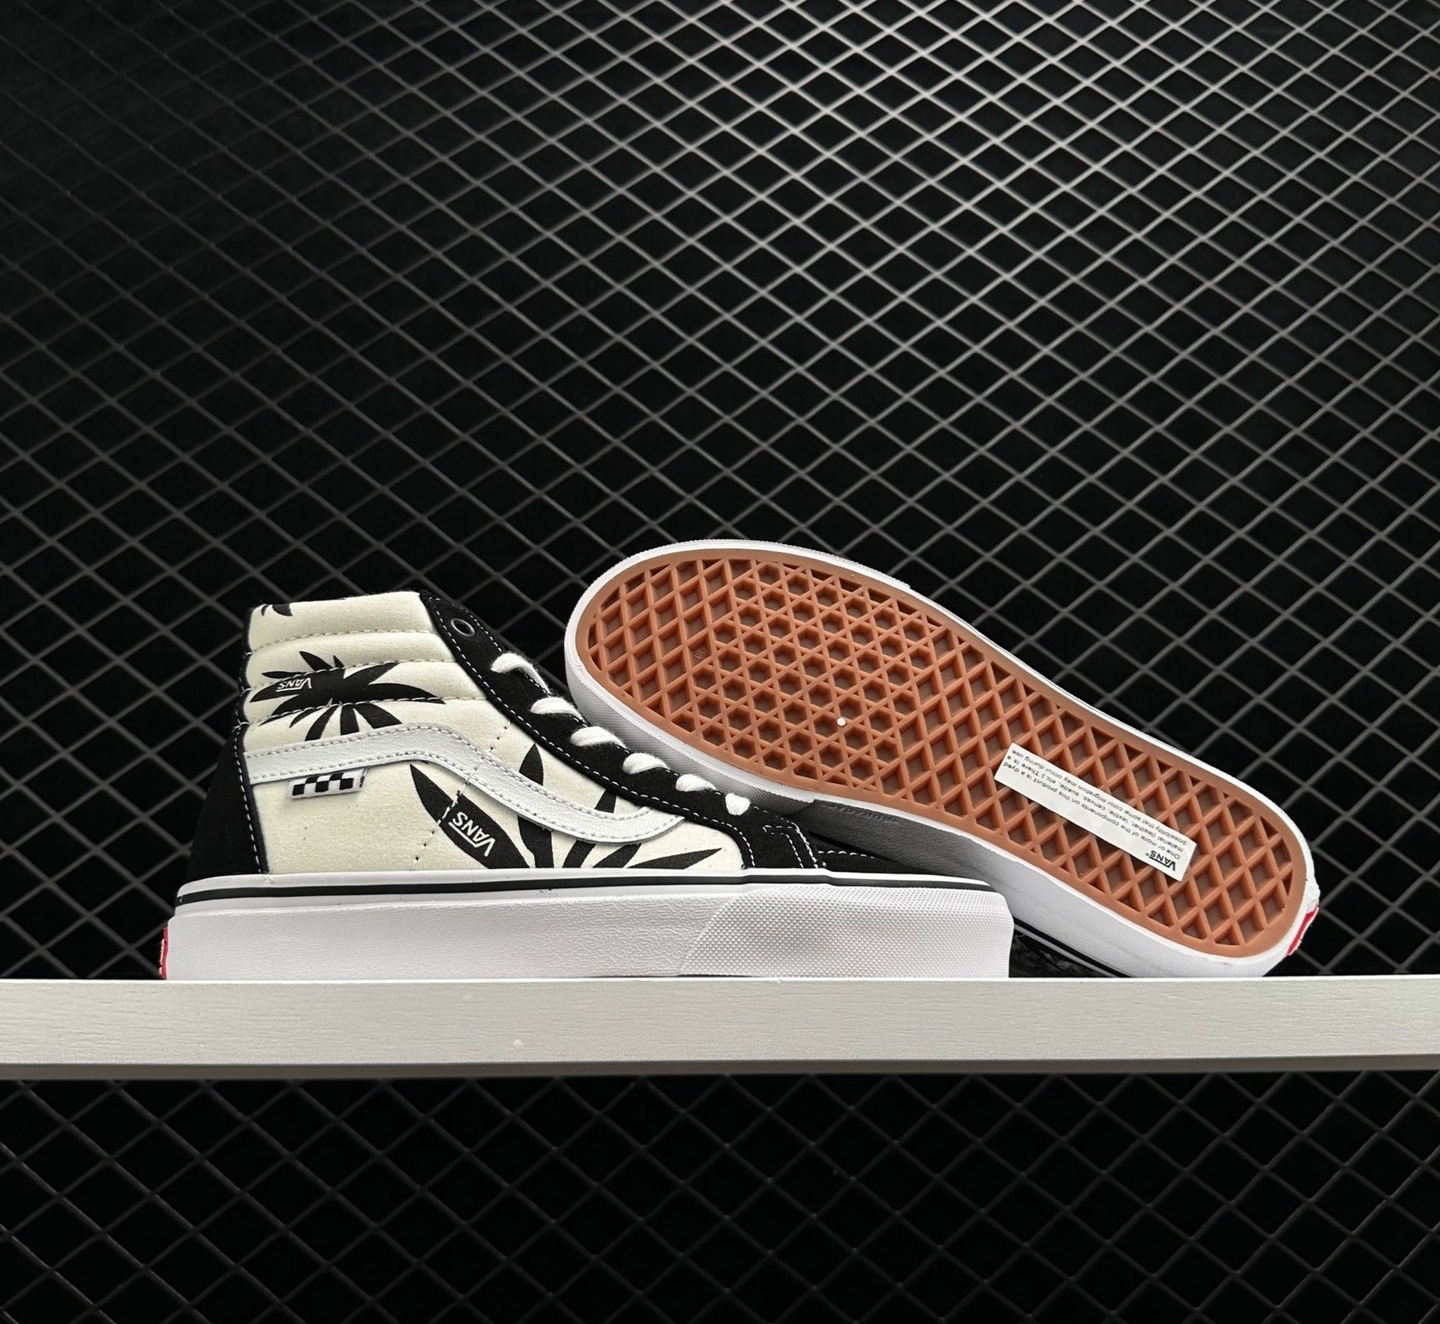 Vans Skate SK8-HI Reissue 'Grosso 88 - Black Palms': Trendy Retro Skate Shoes